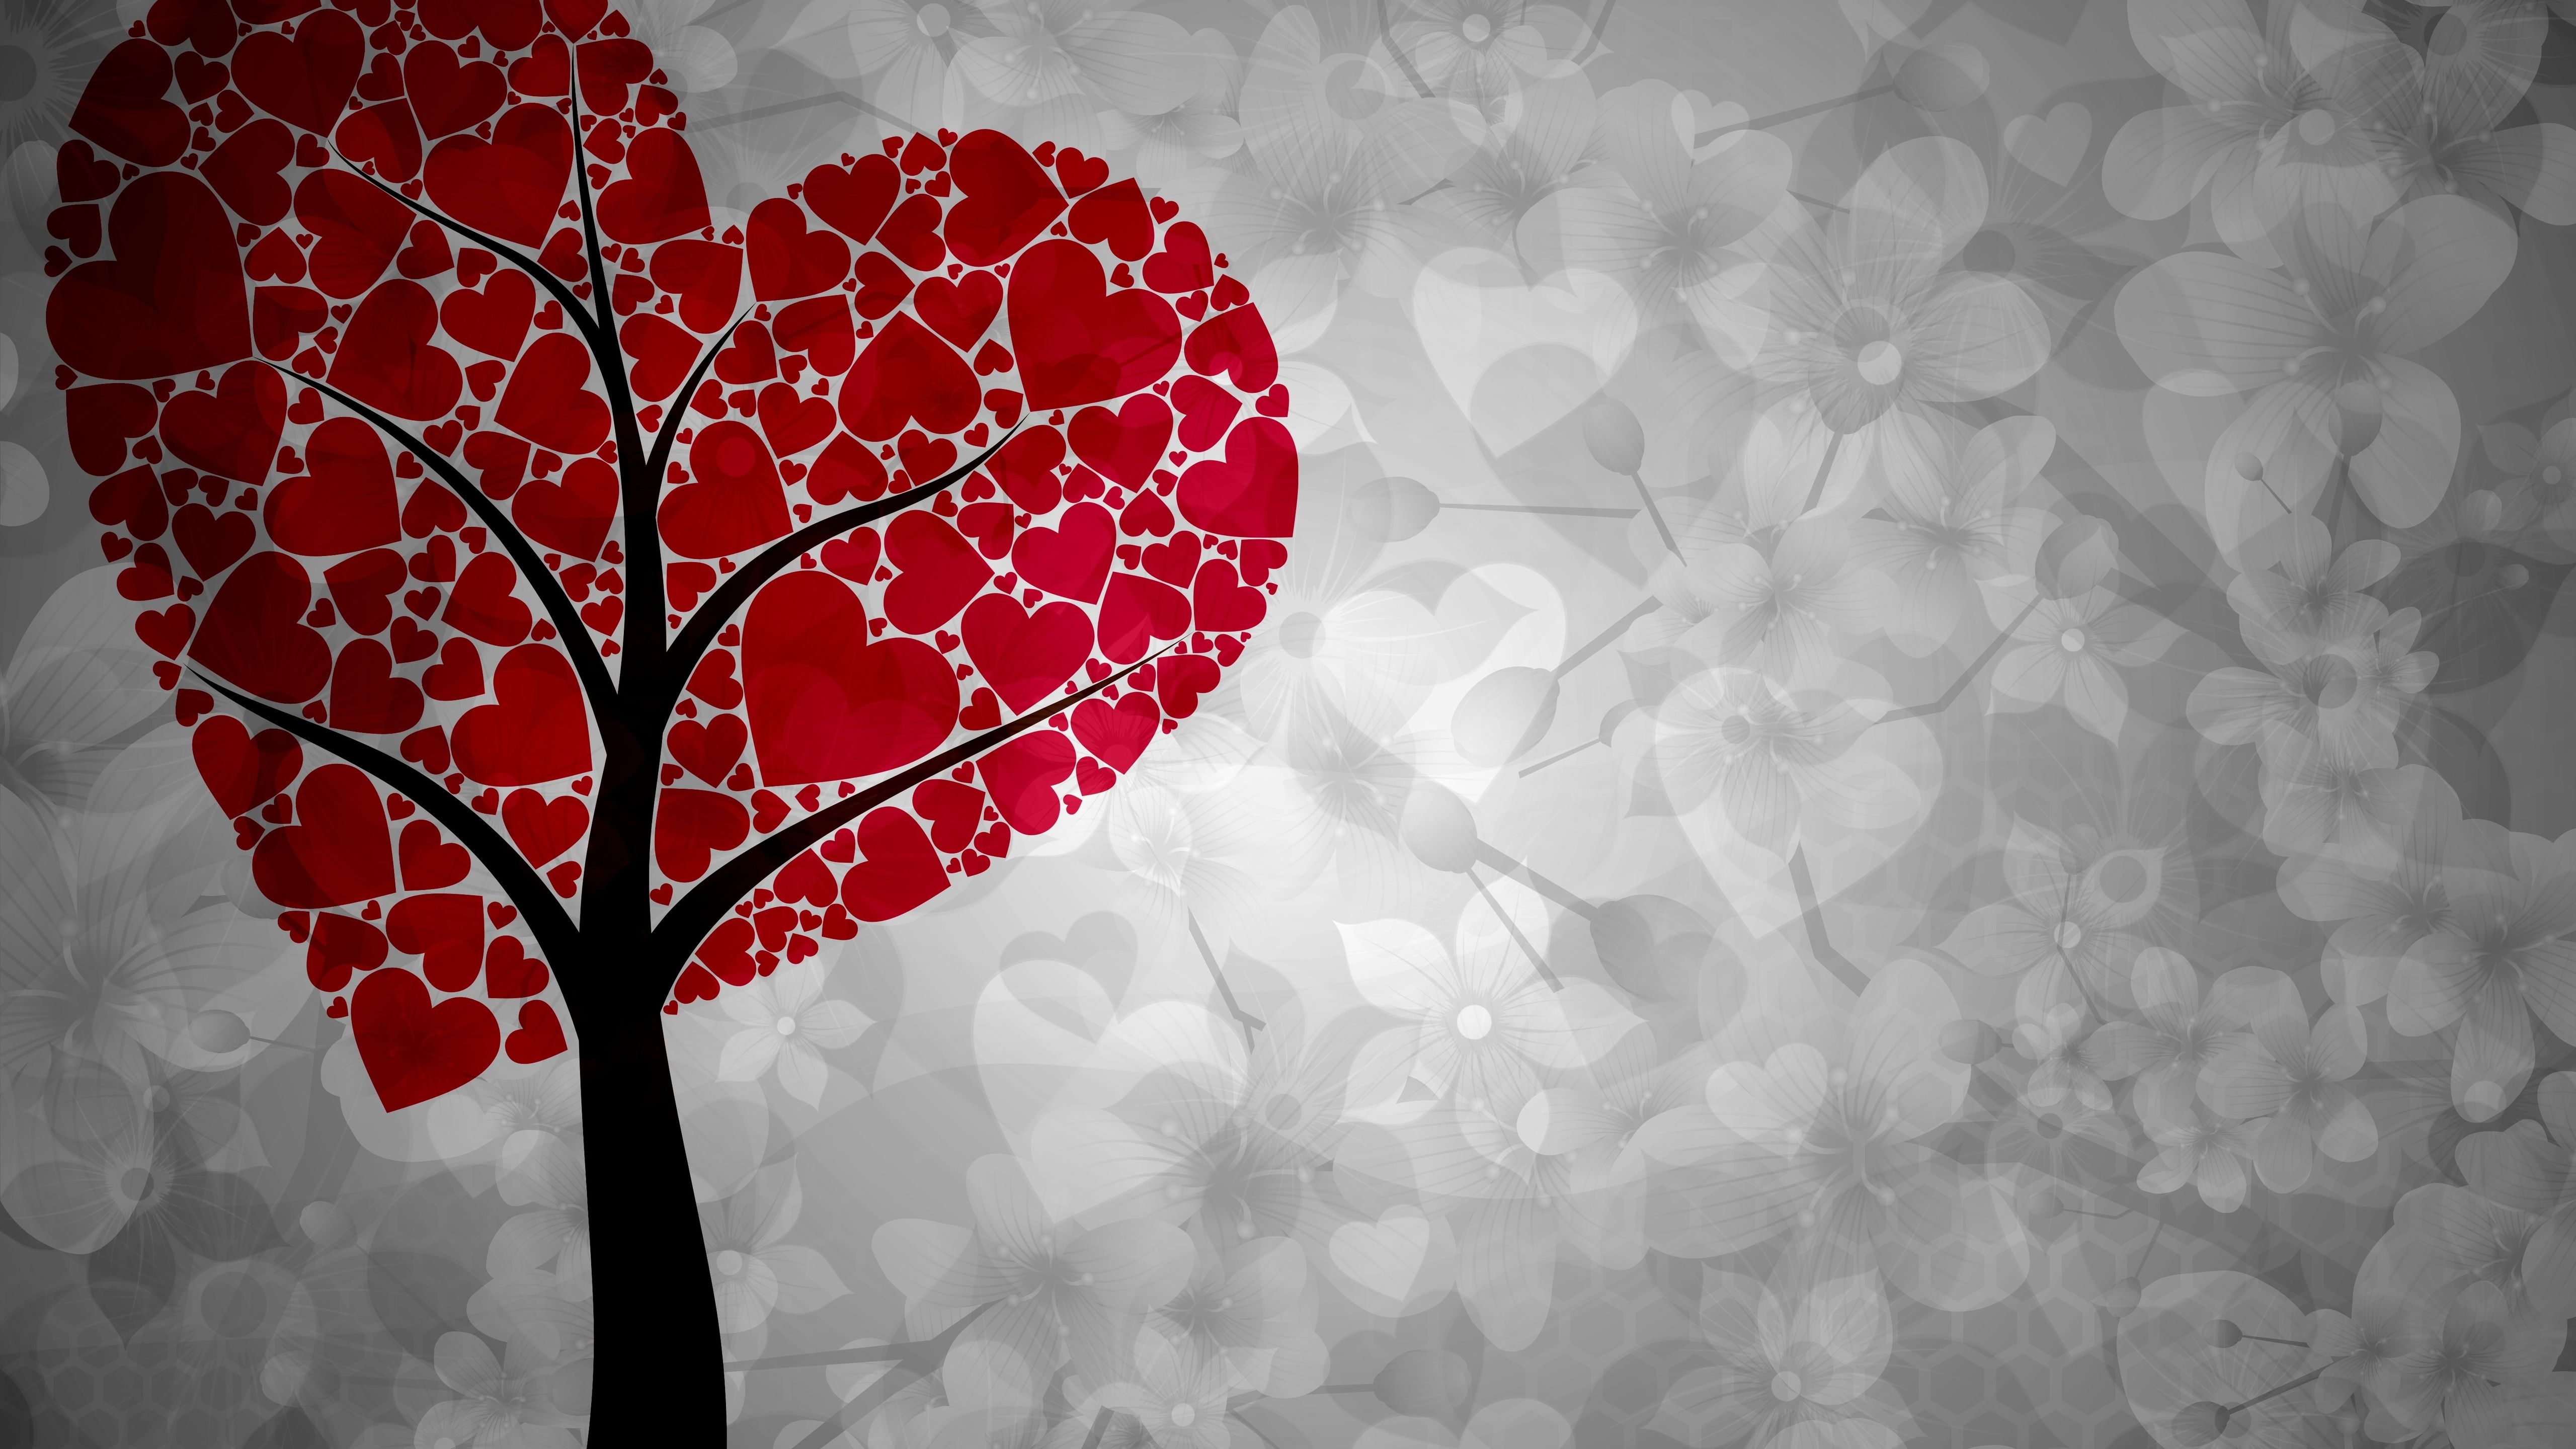 Artistic Heart Tree 5k HD 4k Wallpaper, Image